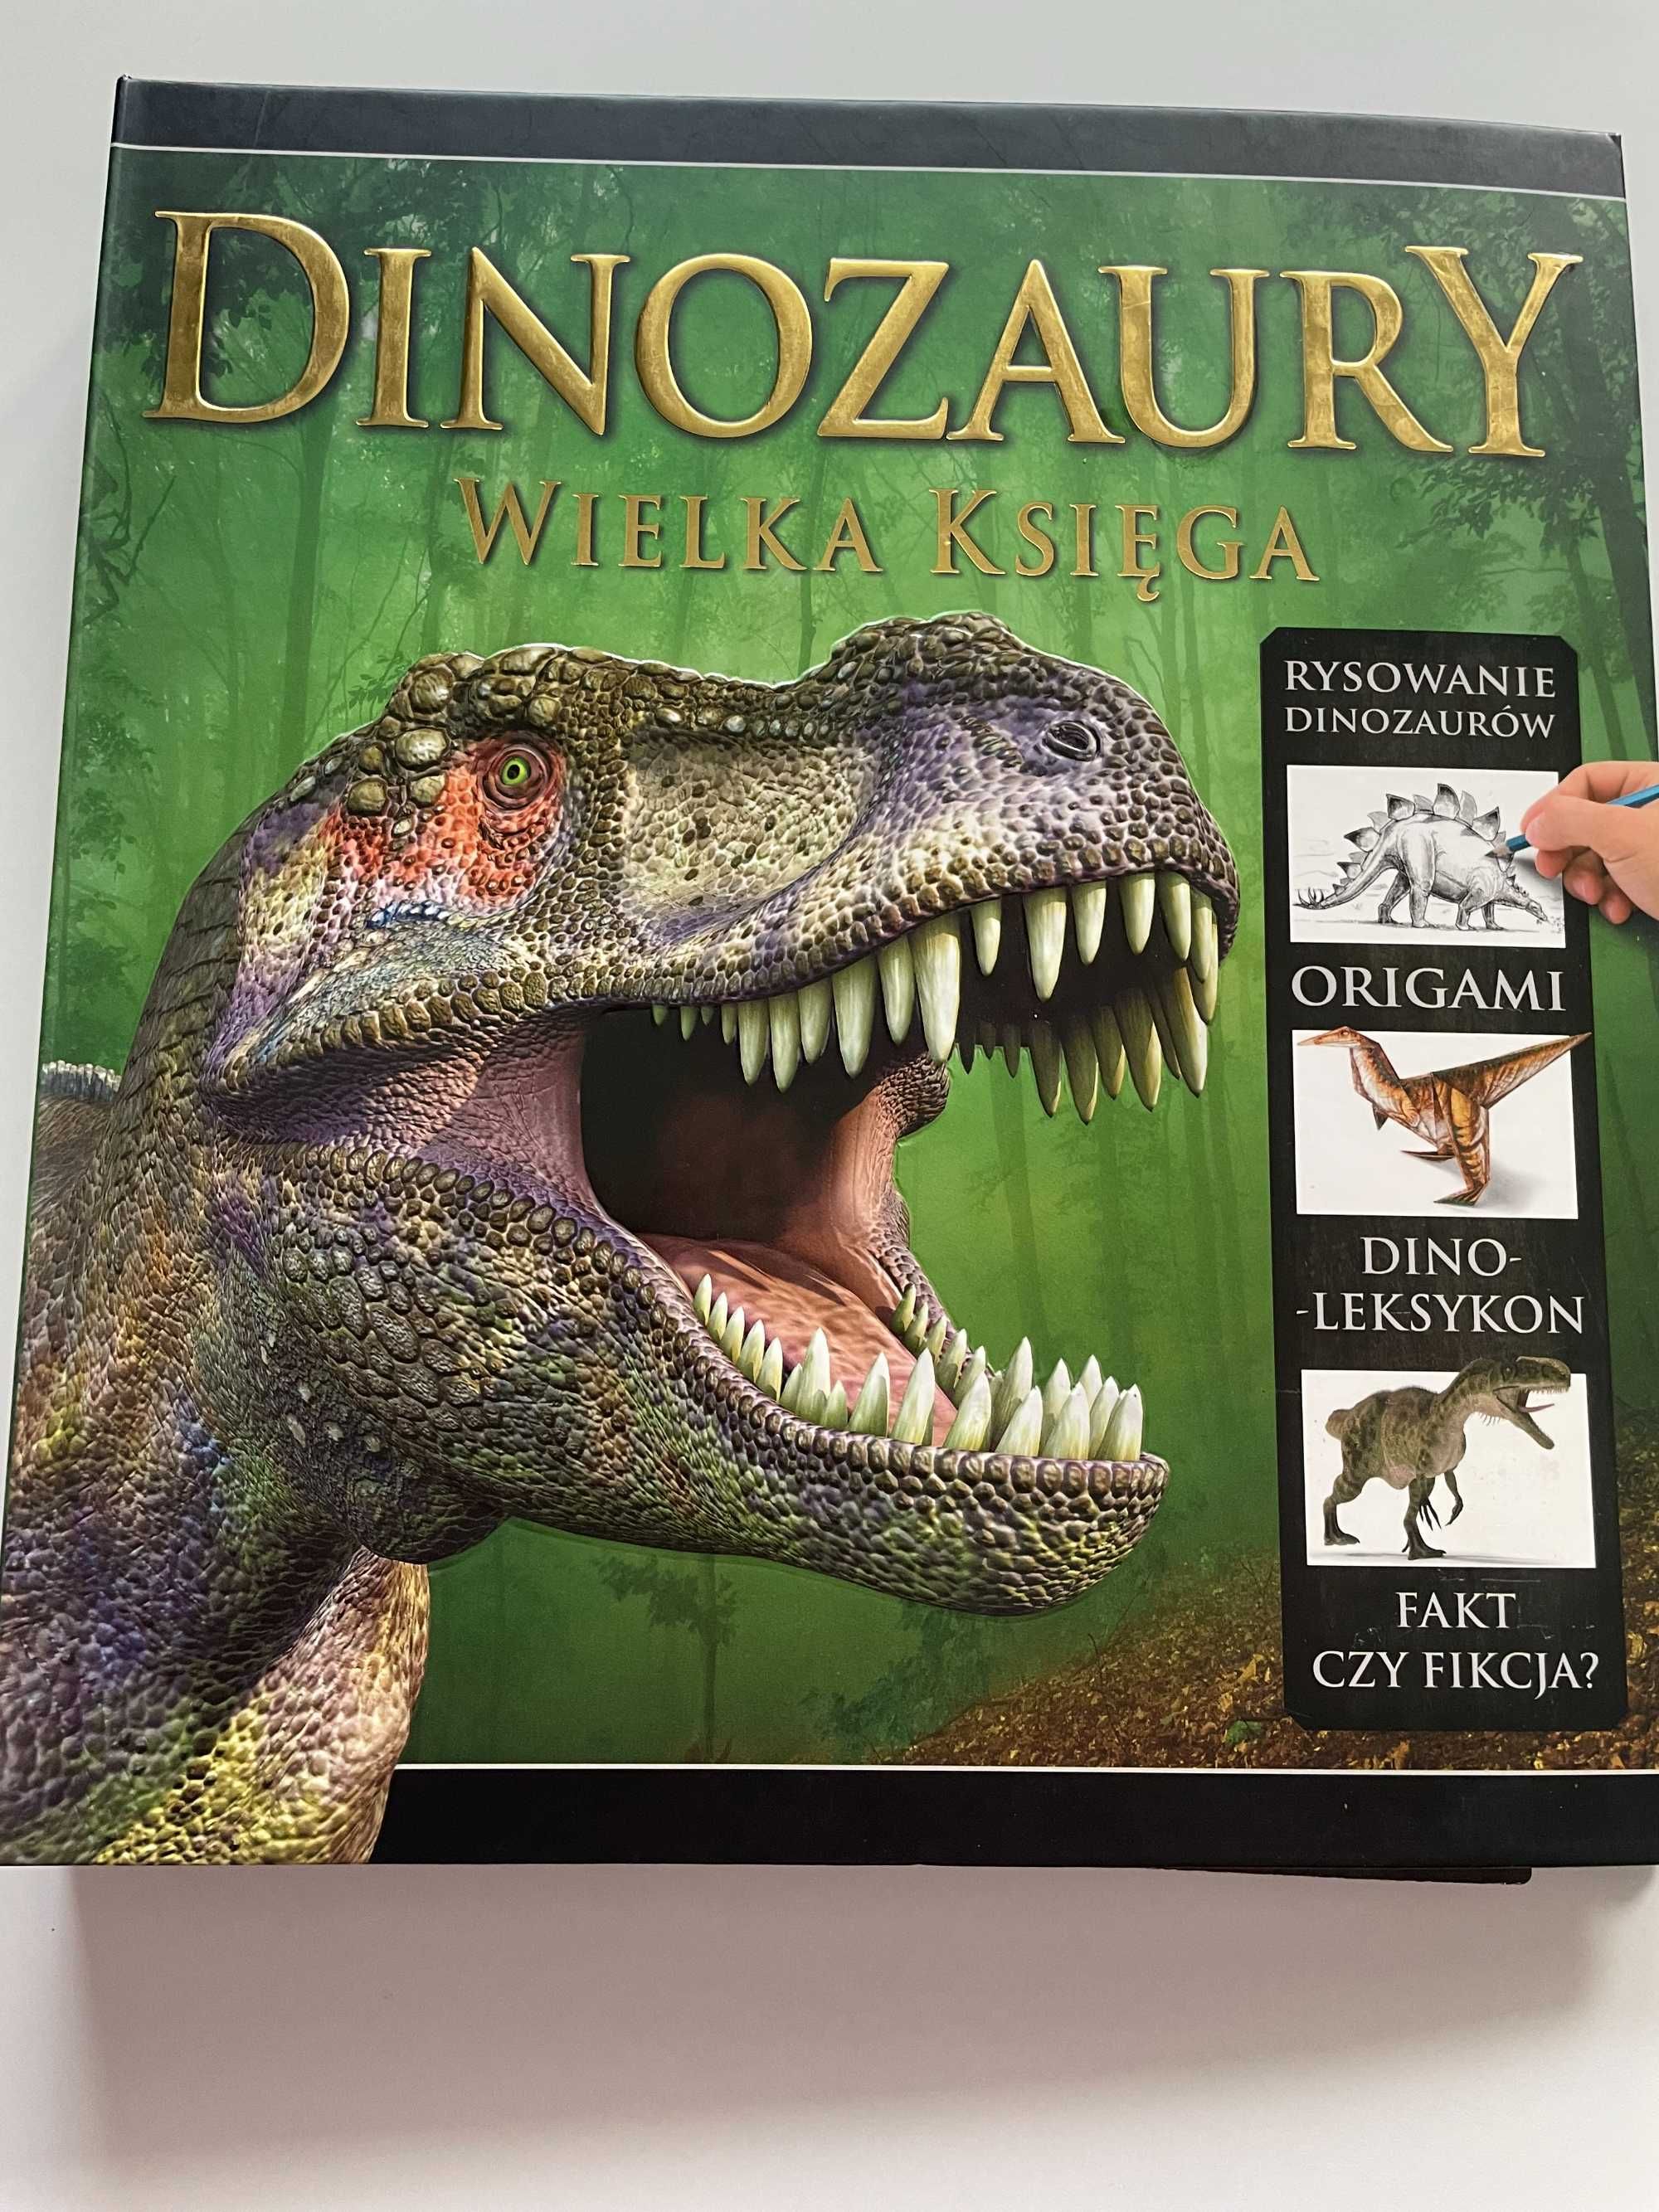 Dinozaury wielka księga - rysowanie, origami, leksykon - książka